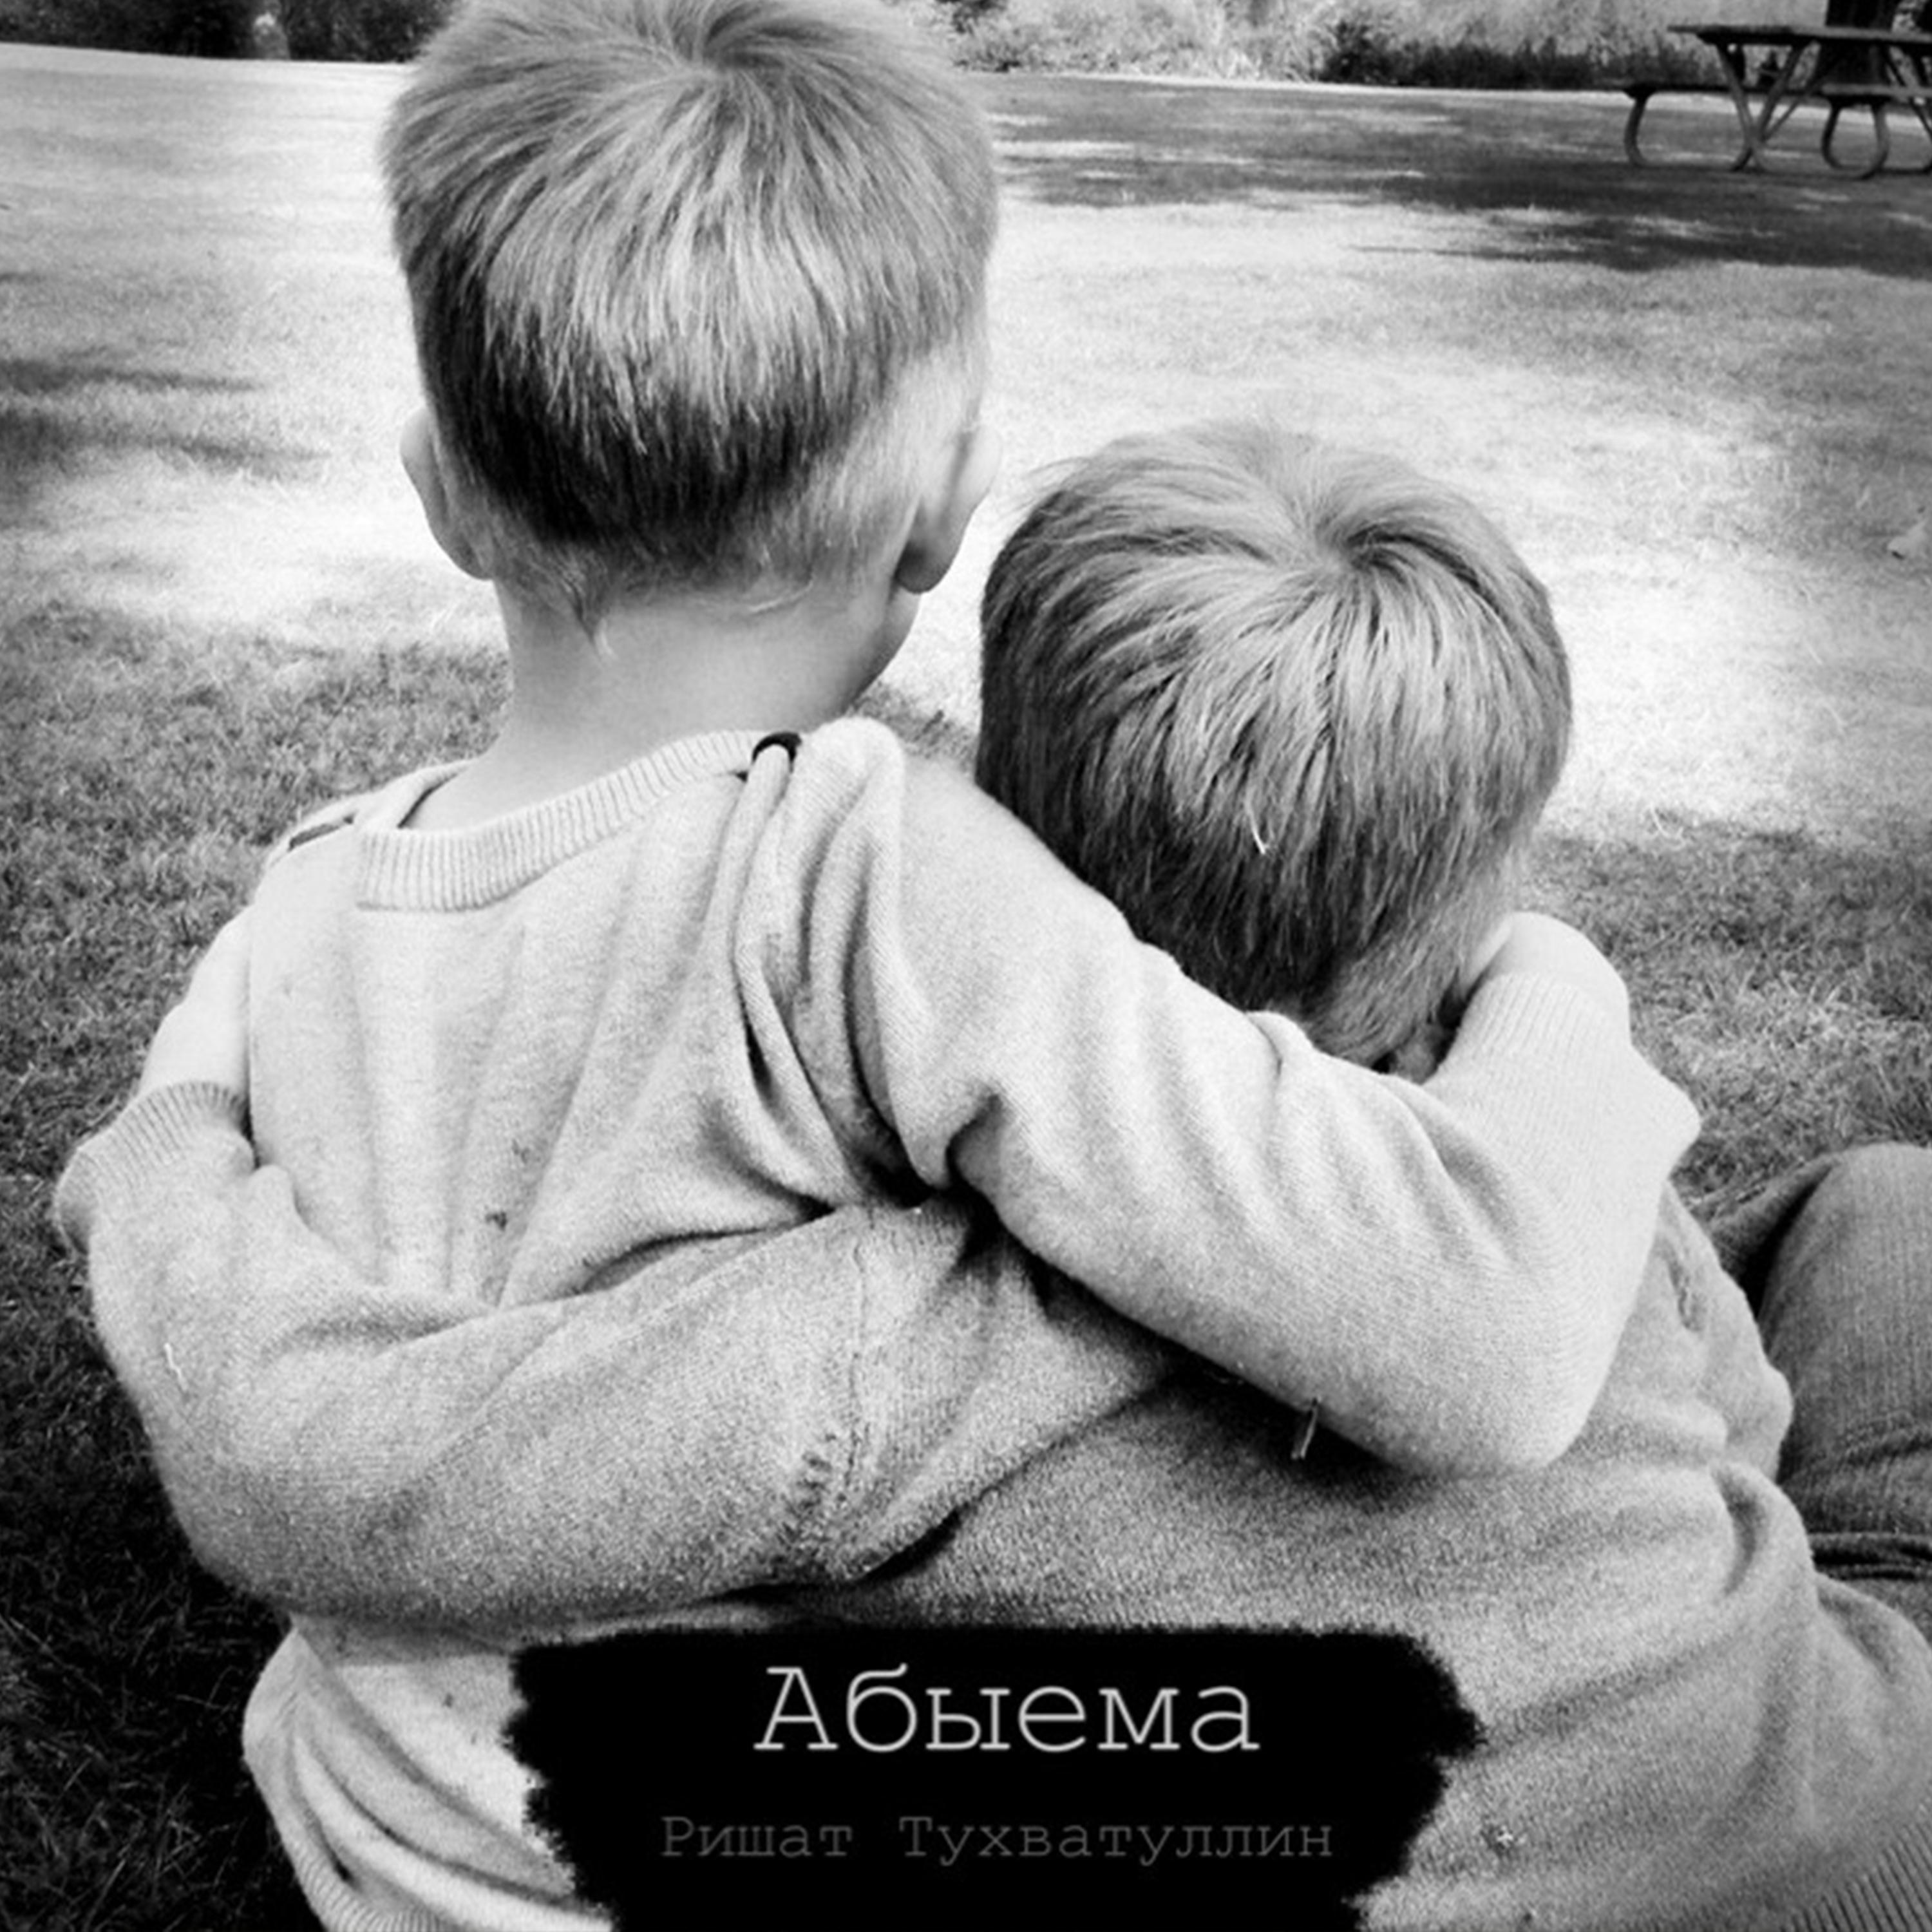 Обнял братика. Братья обнимаются. Объятия братьев. Два братика. Мальчик обнимает мальчика.